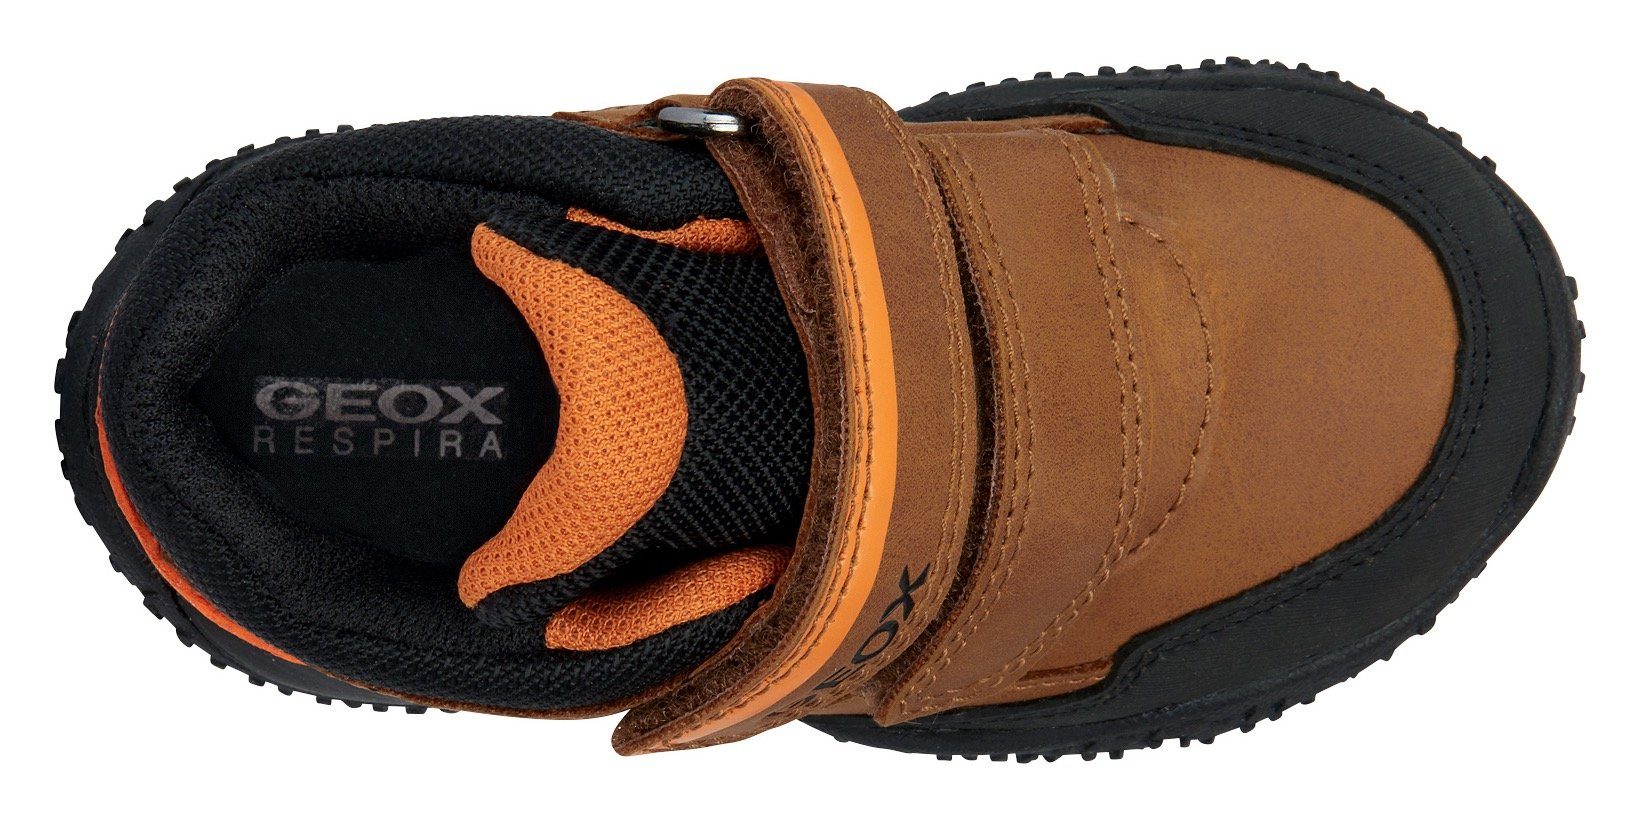 B B BALTIC BOY mit braun-schwarz-orange ABX Geox Lauflernschuh TEX-Ausstattung